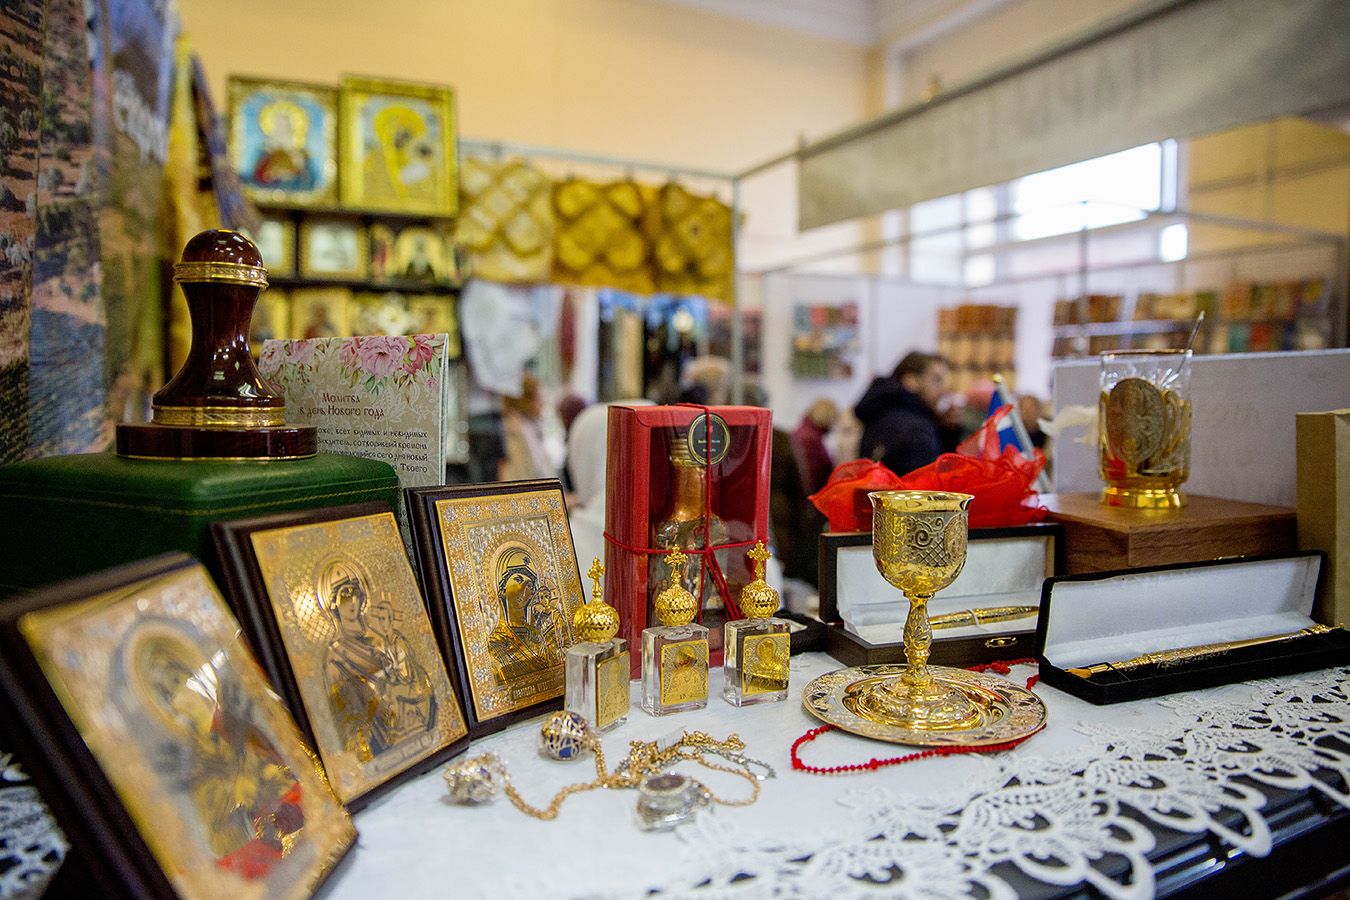 XVI Международная православная выставка «От покаяния к воскресению России» открылась молебном на начало благого дела